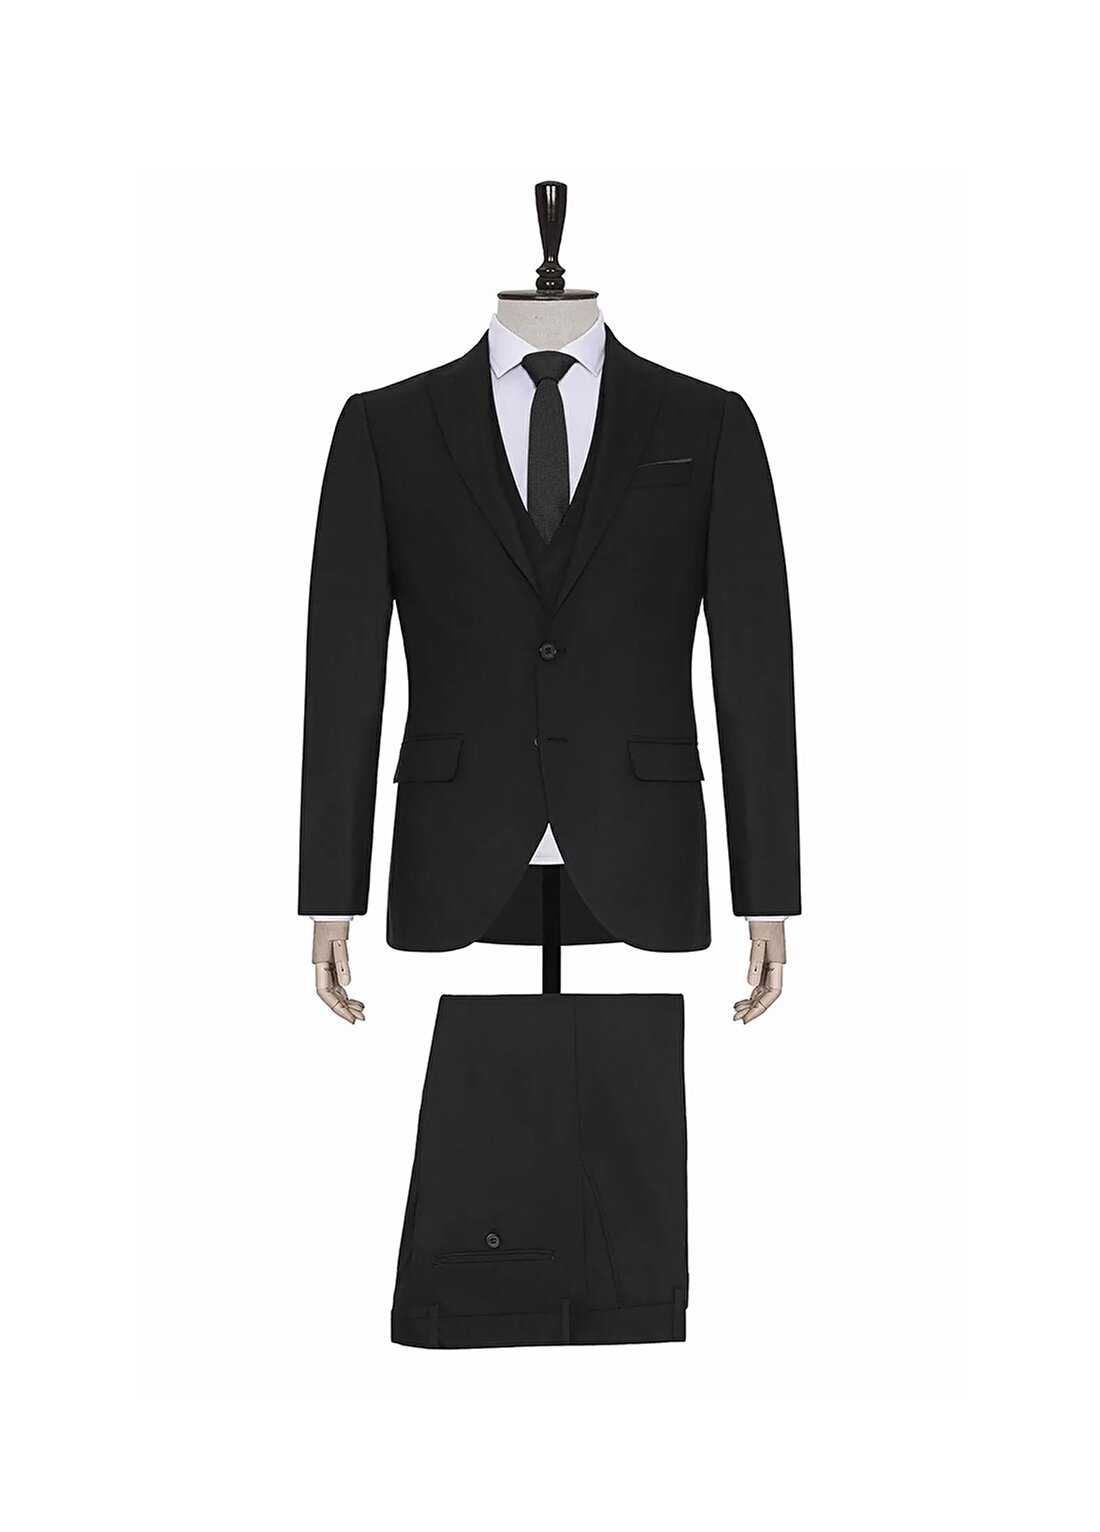 Süvari Normal Bel Slim Fit Siyah Erkek Takım Elbise TK1020000241